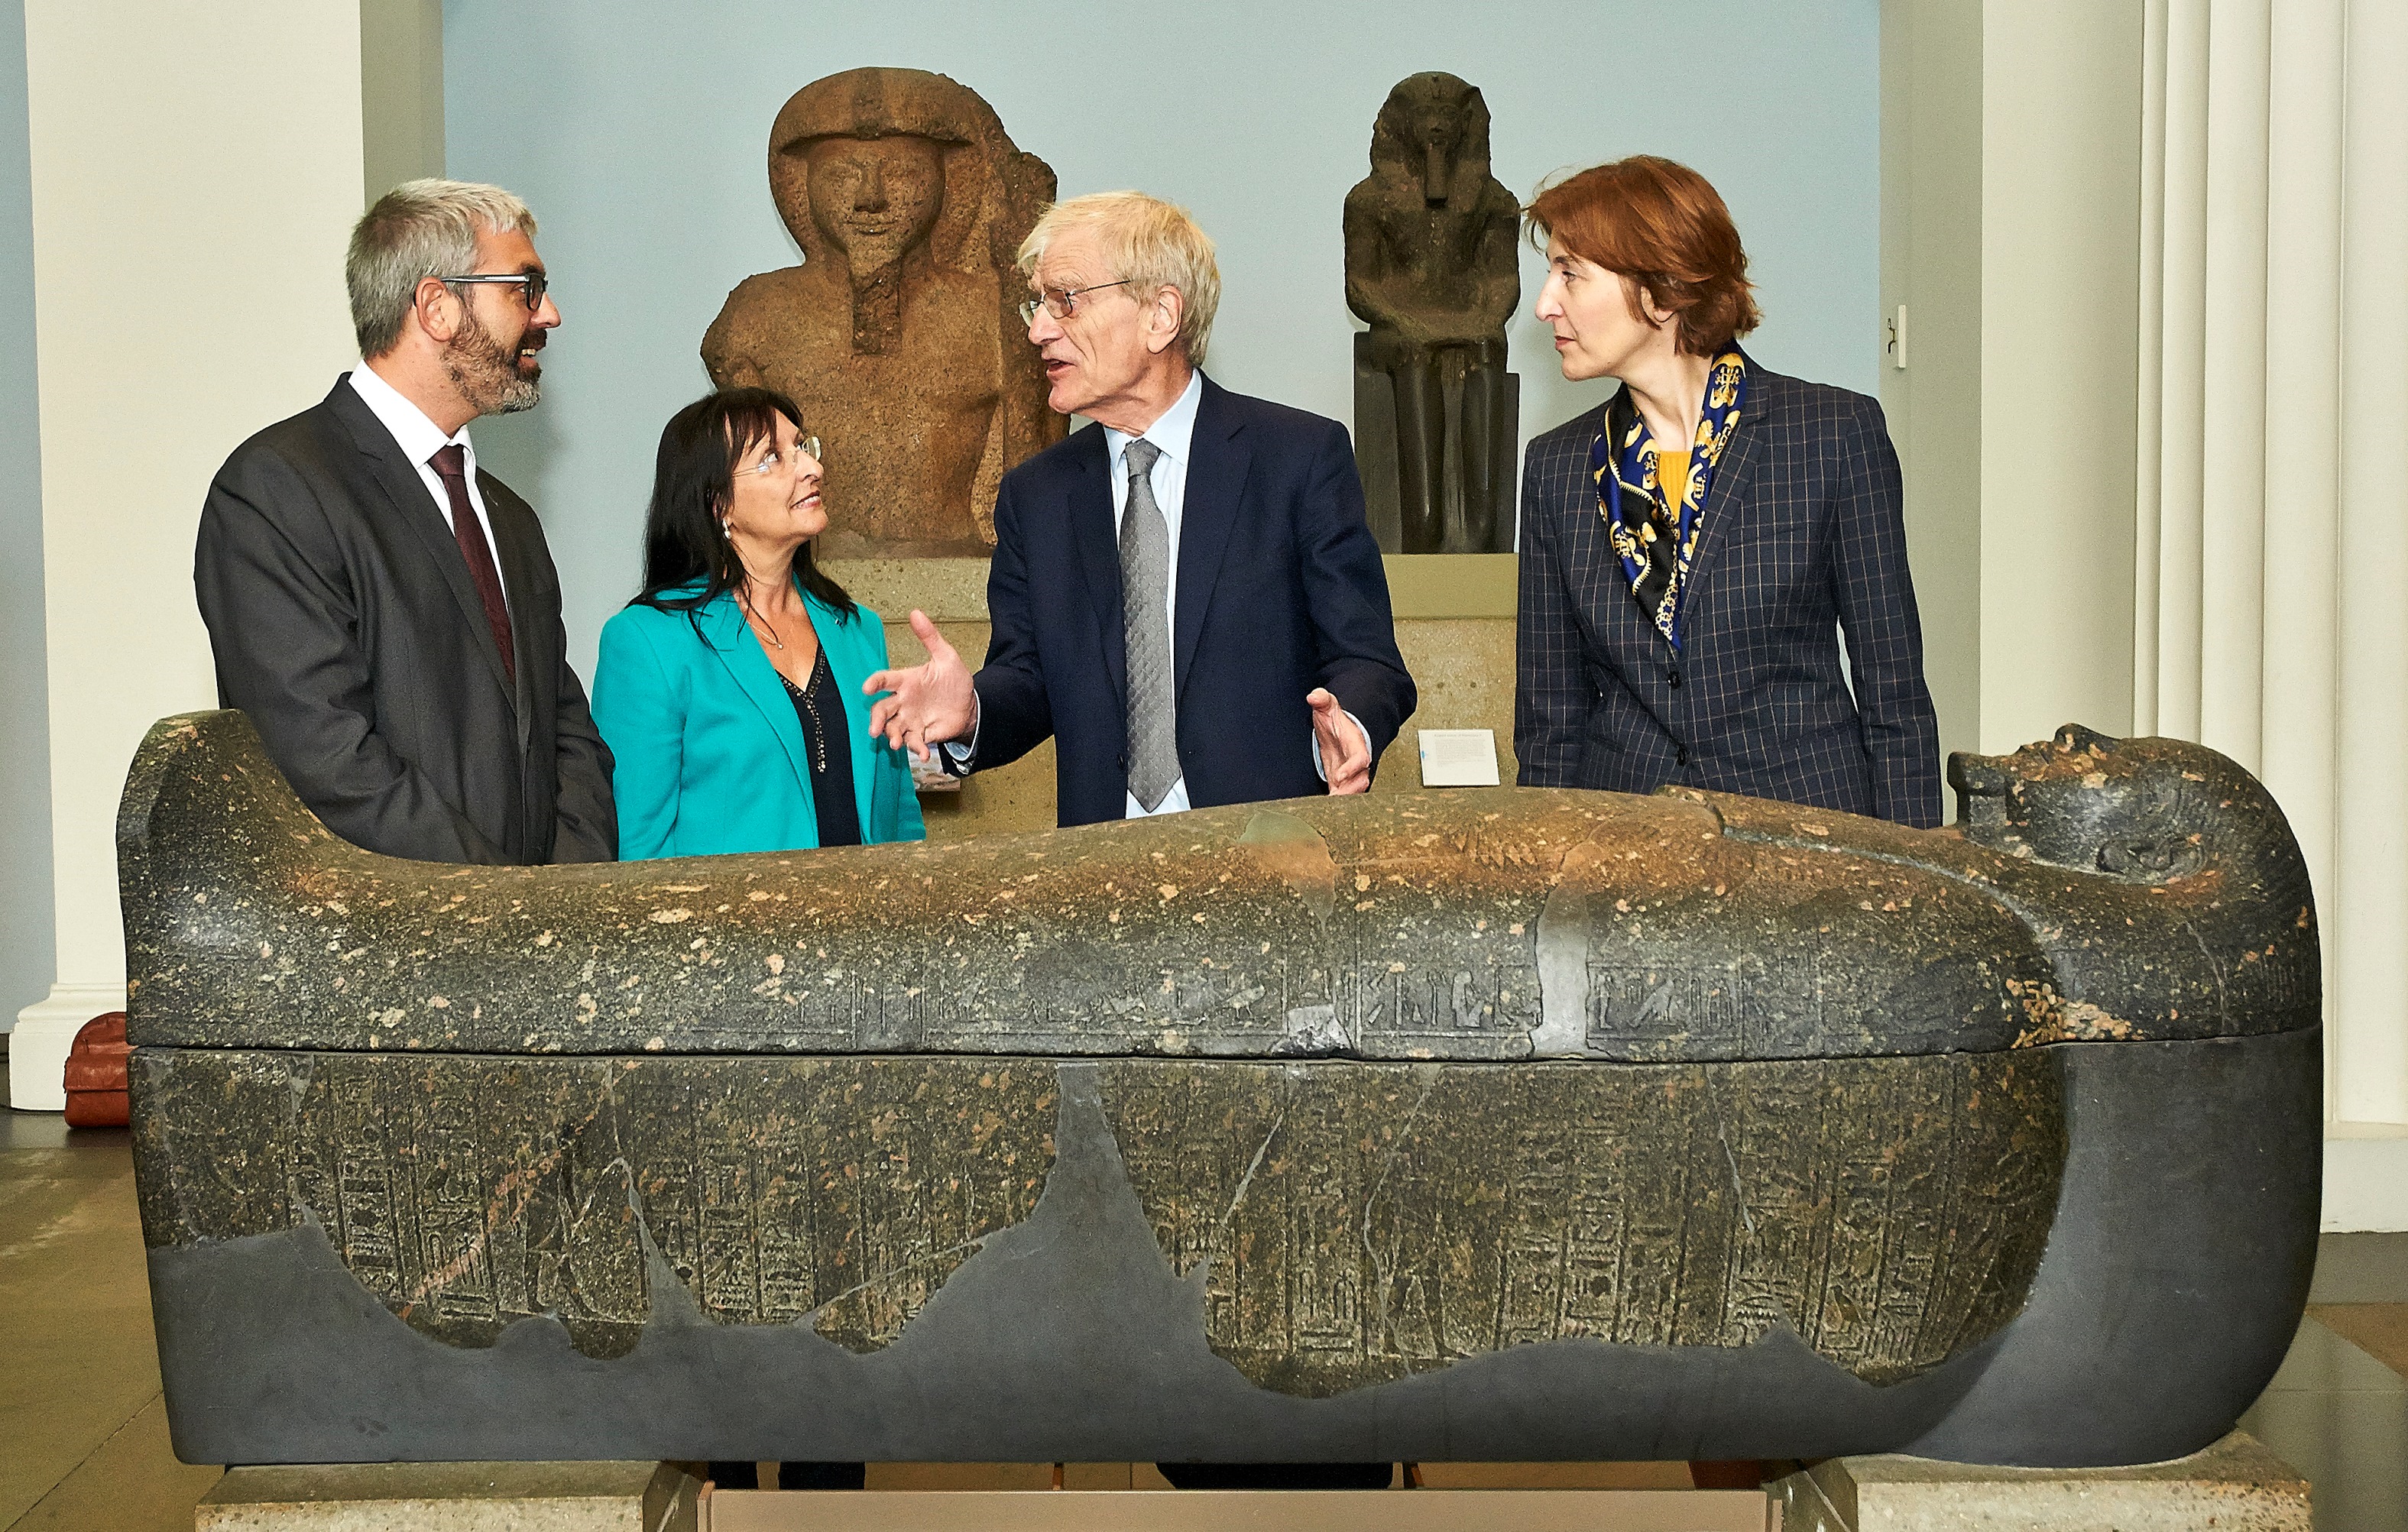 Acuerdo histórico para traer las obras del British Museum a España